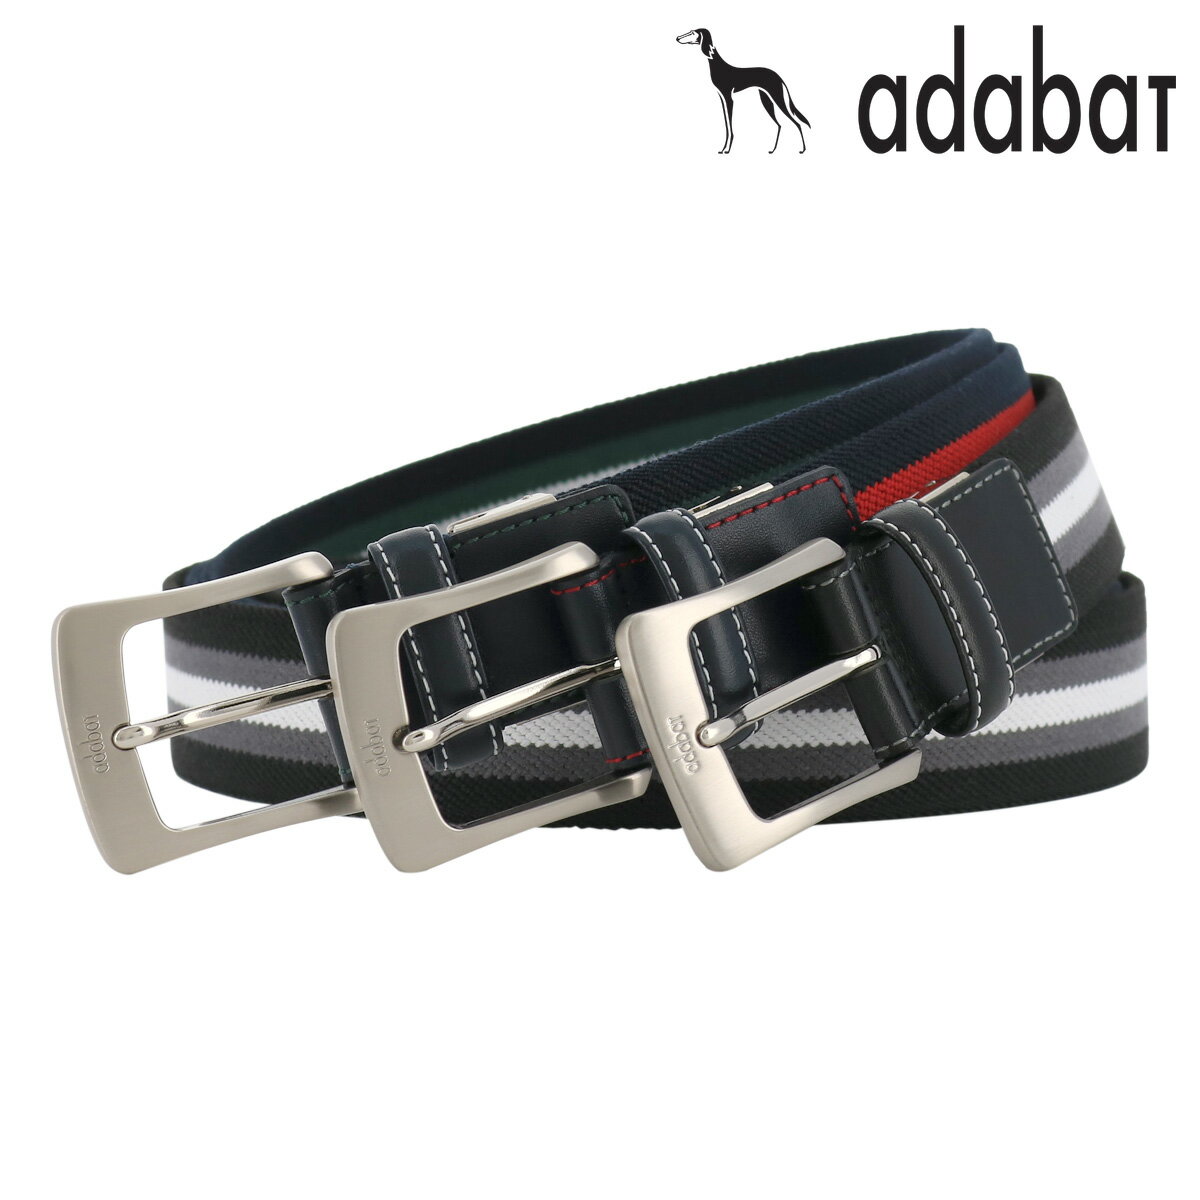 アダバット ベルト ピンタイプ メンズ 5050119 日本製 adabat | ビジネス カジュアル 本革 レザー [bef][即日発送]